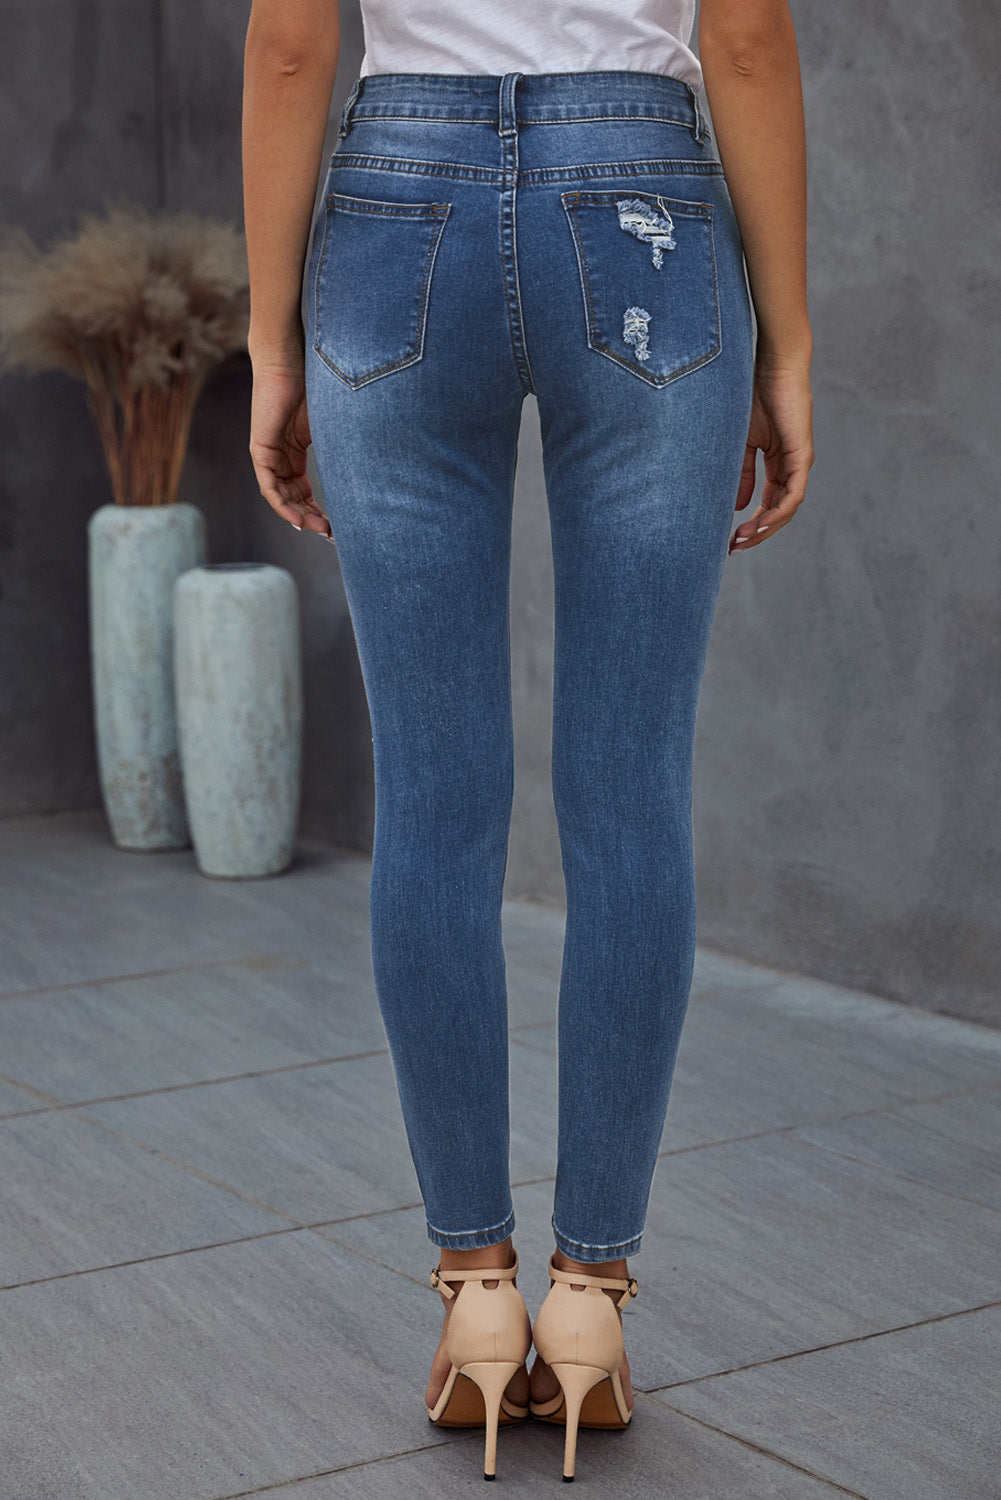 Vintage Skinny Ripped Jeans - DromedarShop.com Online Boutique